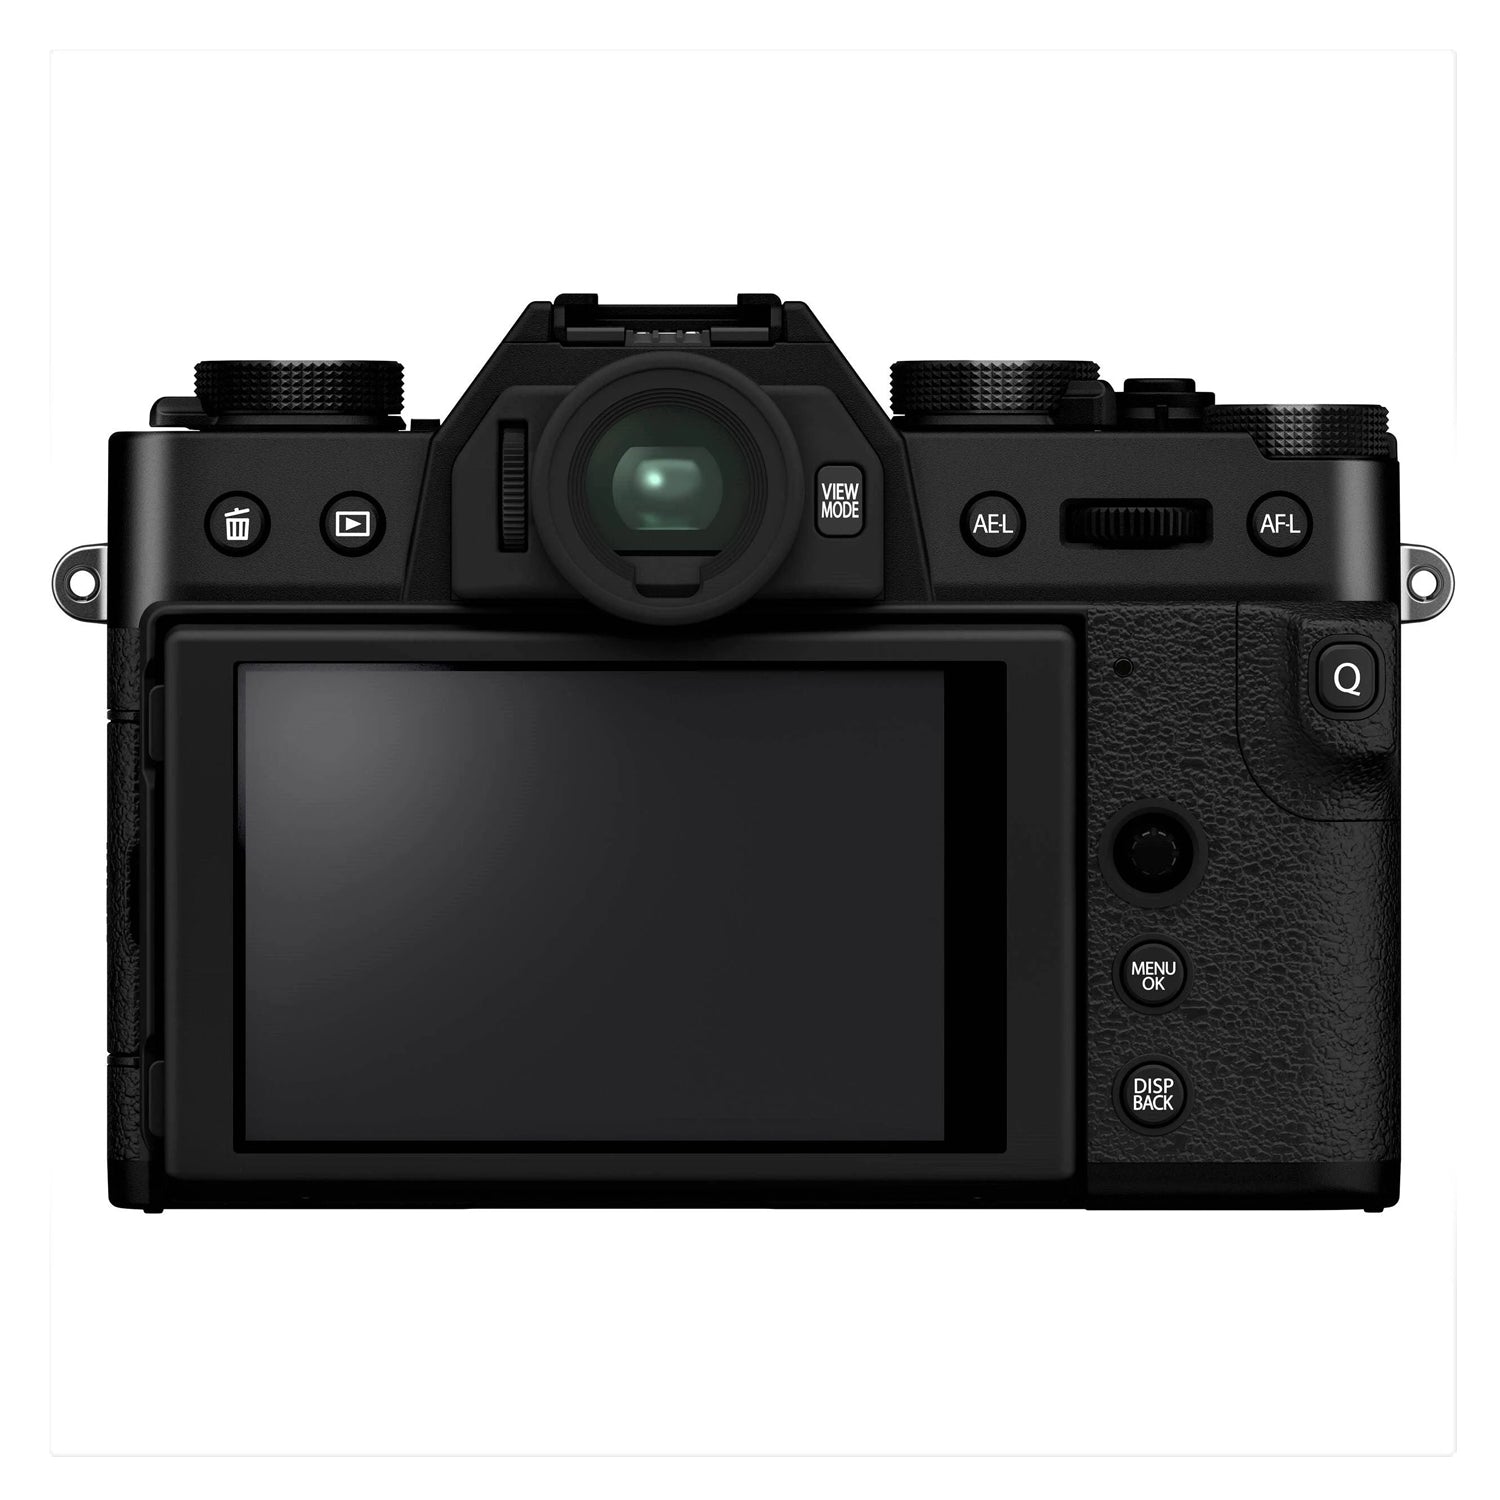 Fujifilm X Series X-T30 II Digital Camera